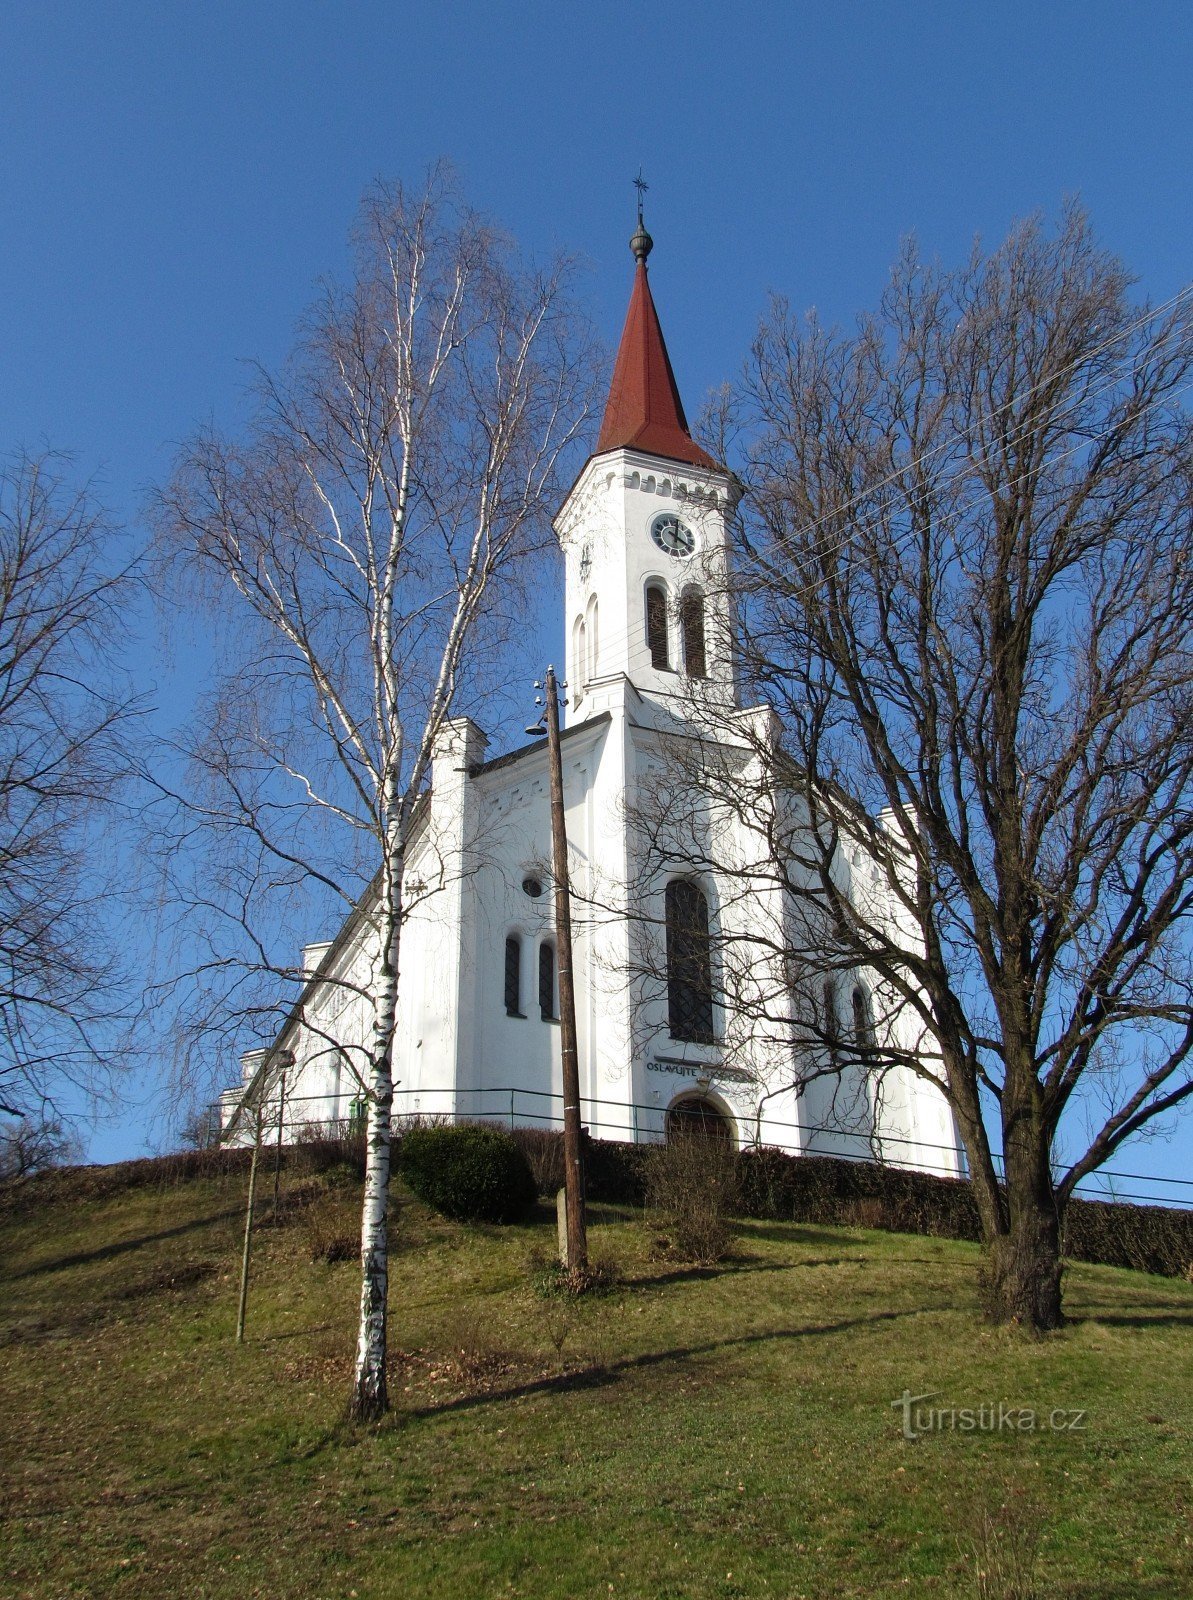 Zádveřice-Raková - evangelička crkva